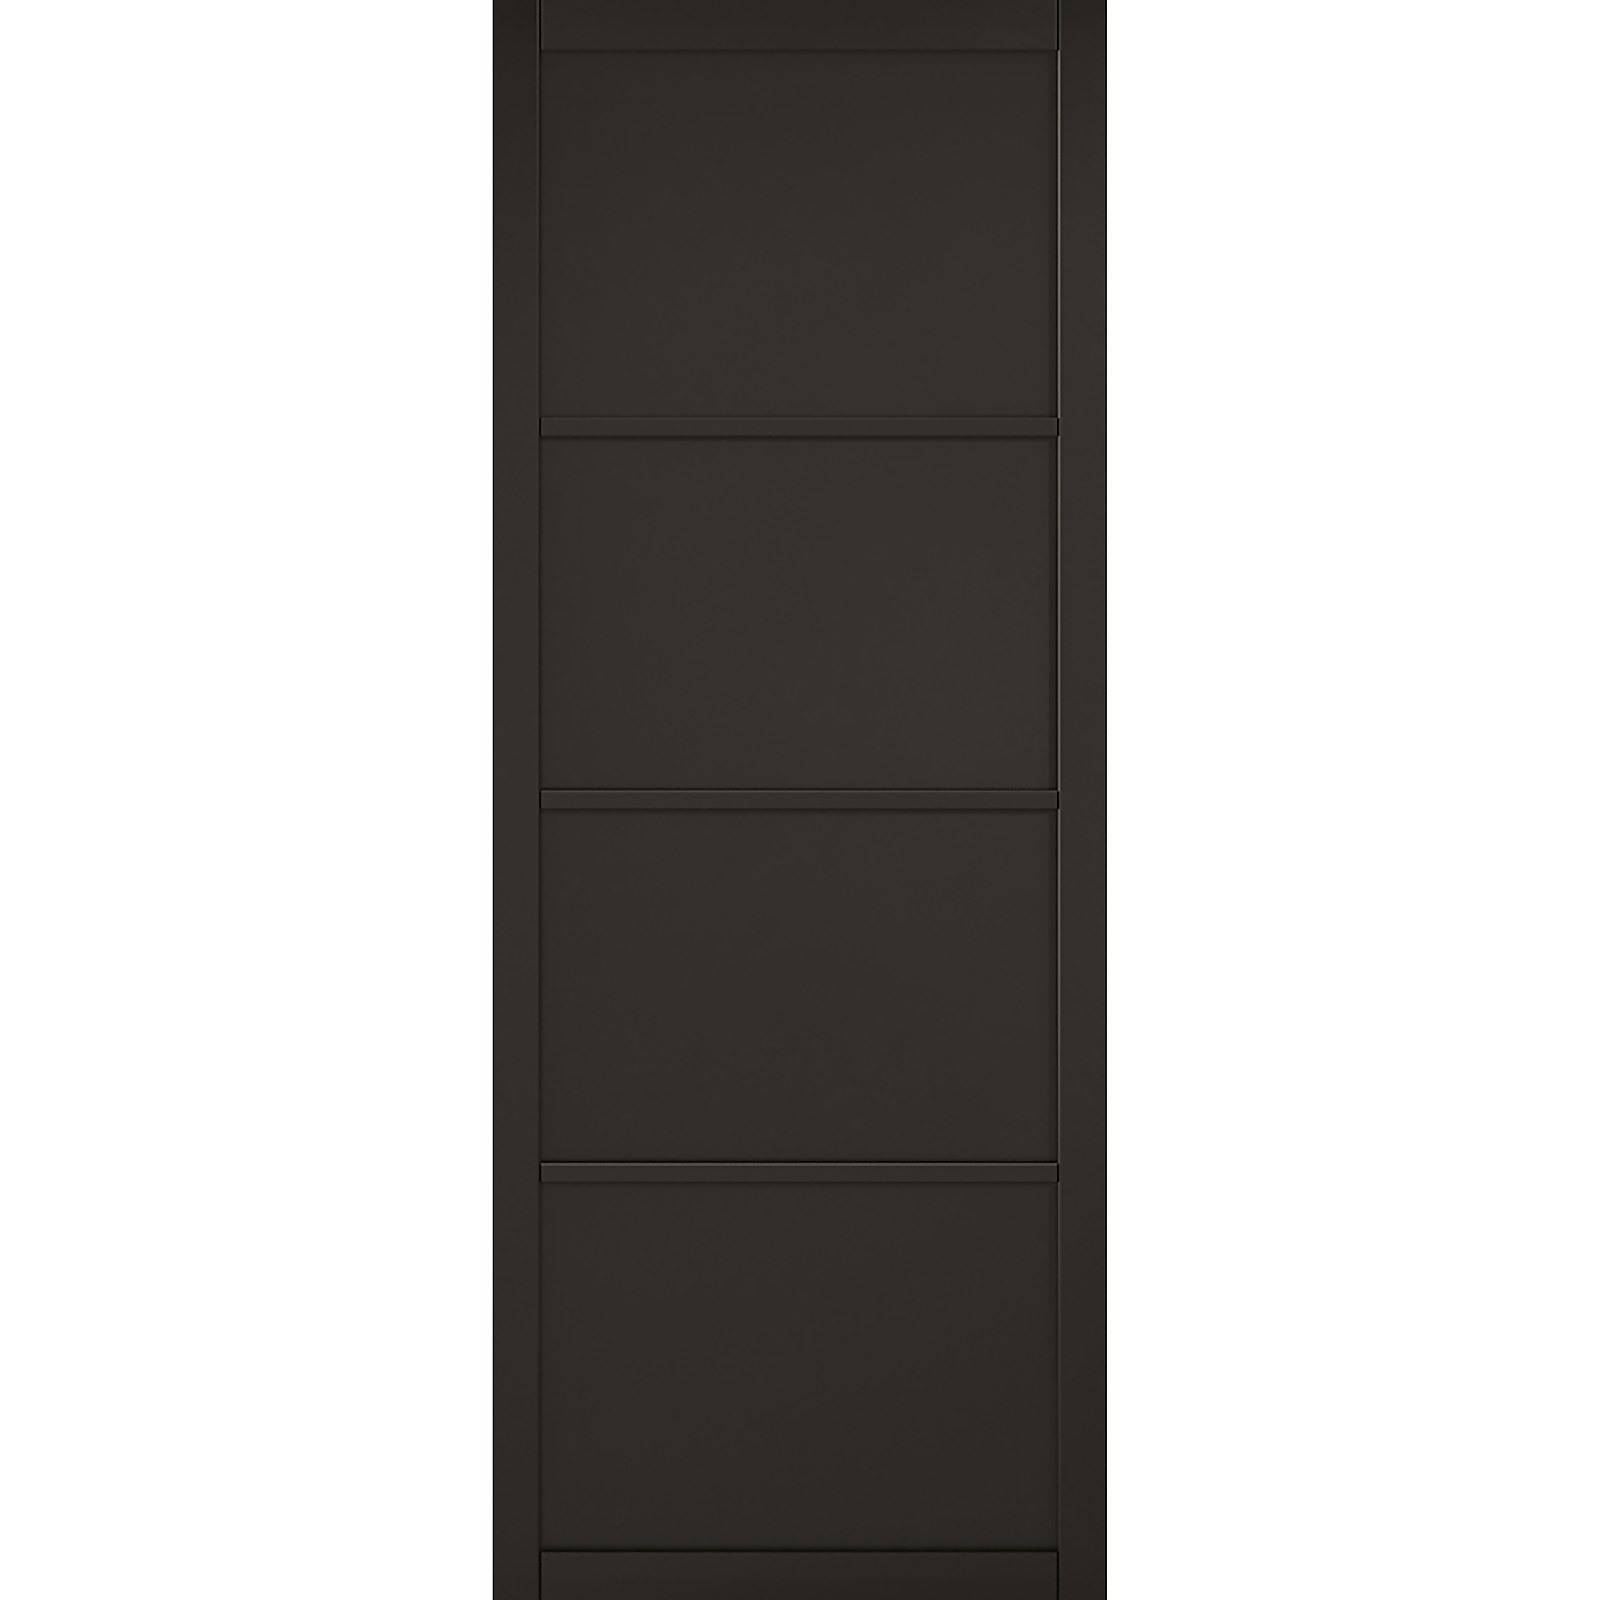 Photo of Soho - 4 Panel Primed Black Internal Door - 1981 X 686 X 35mm